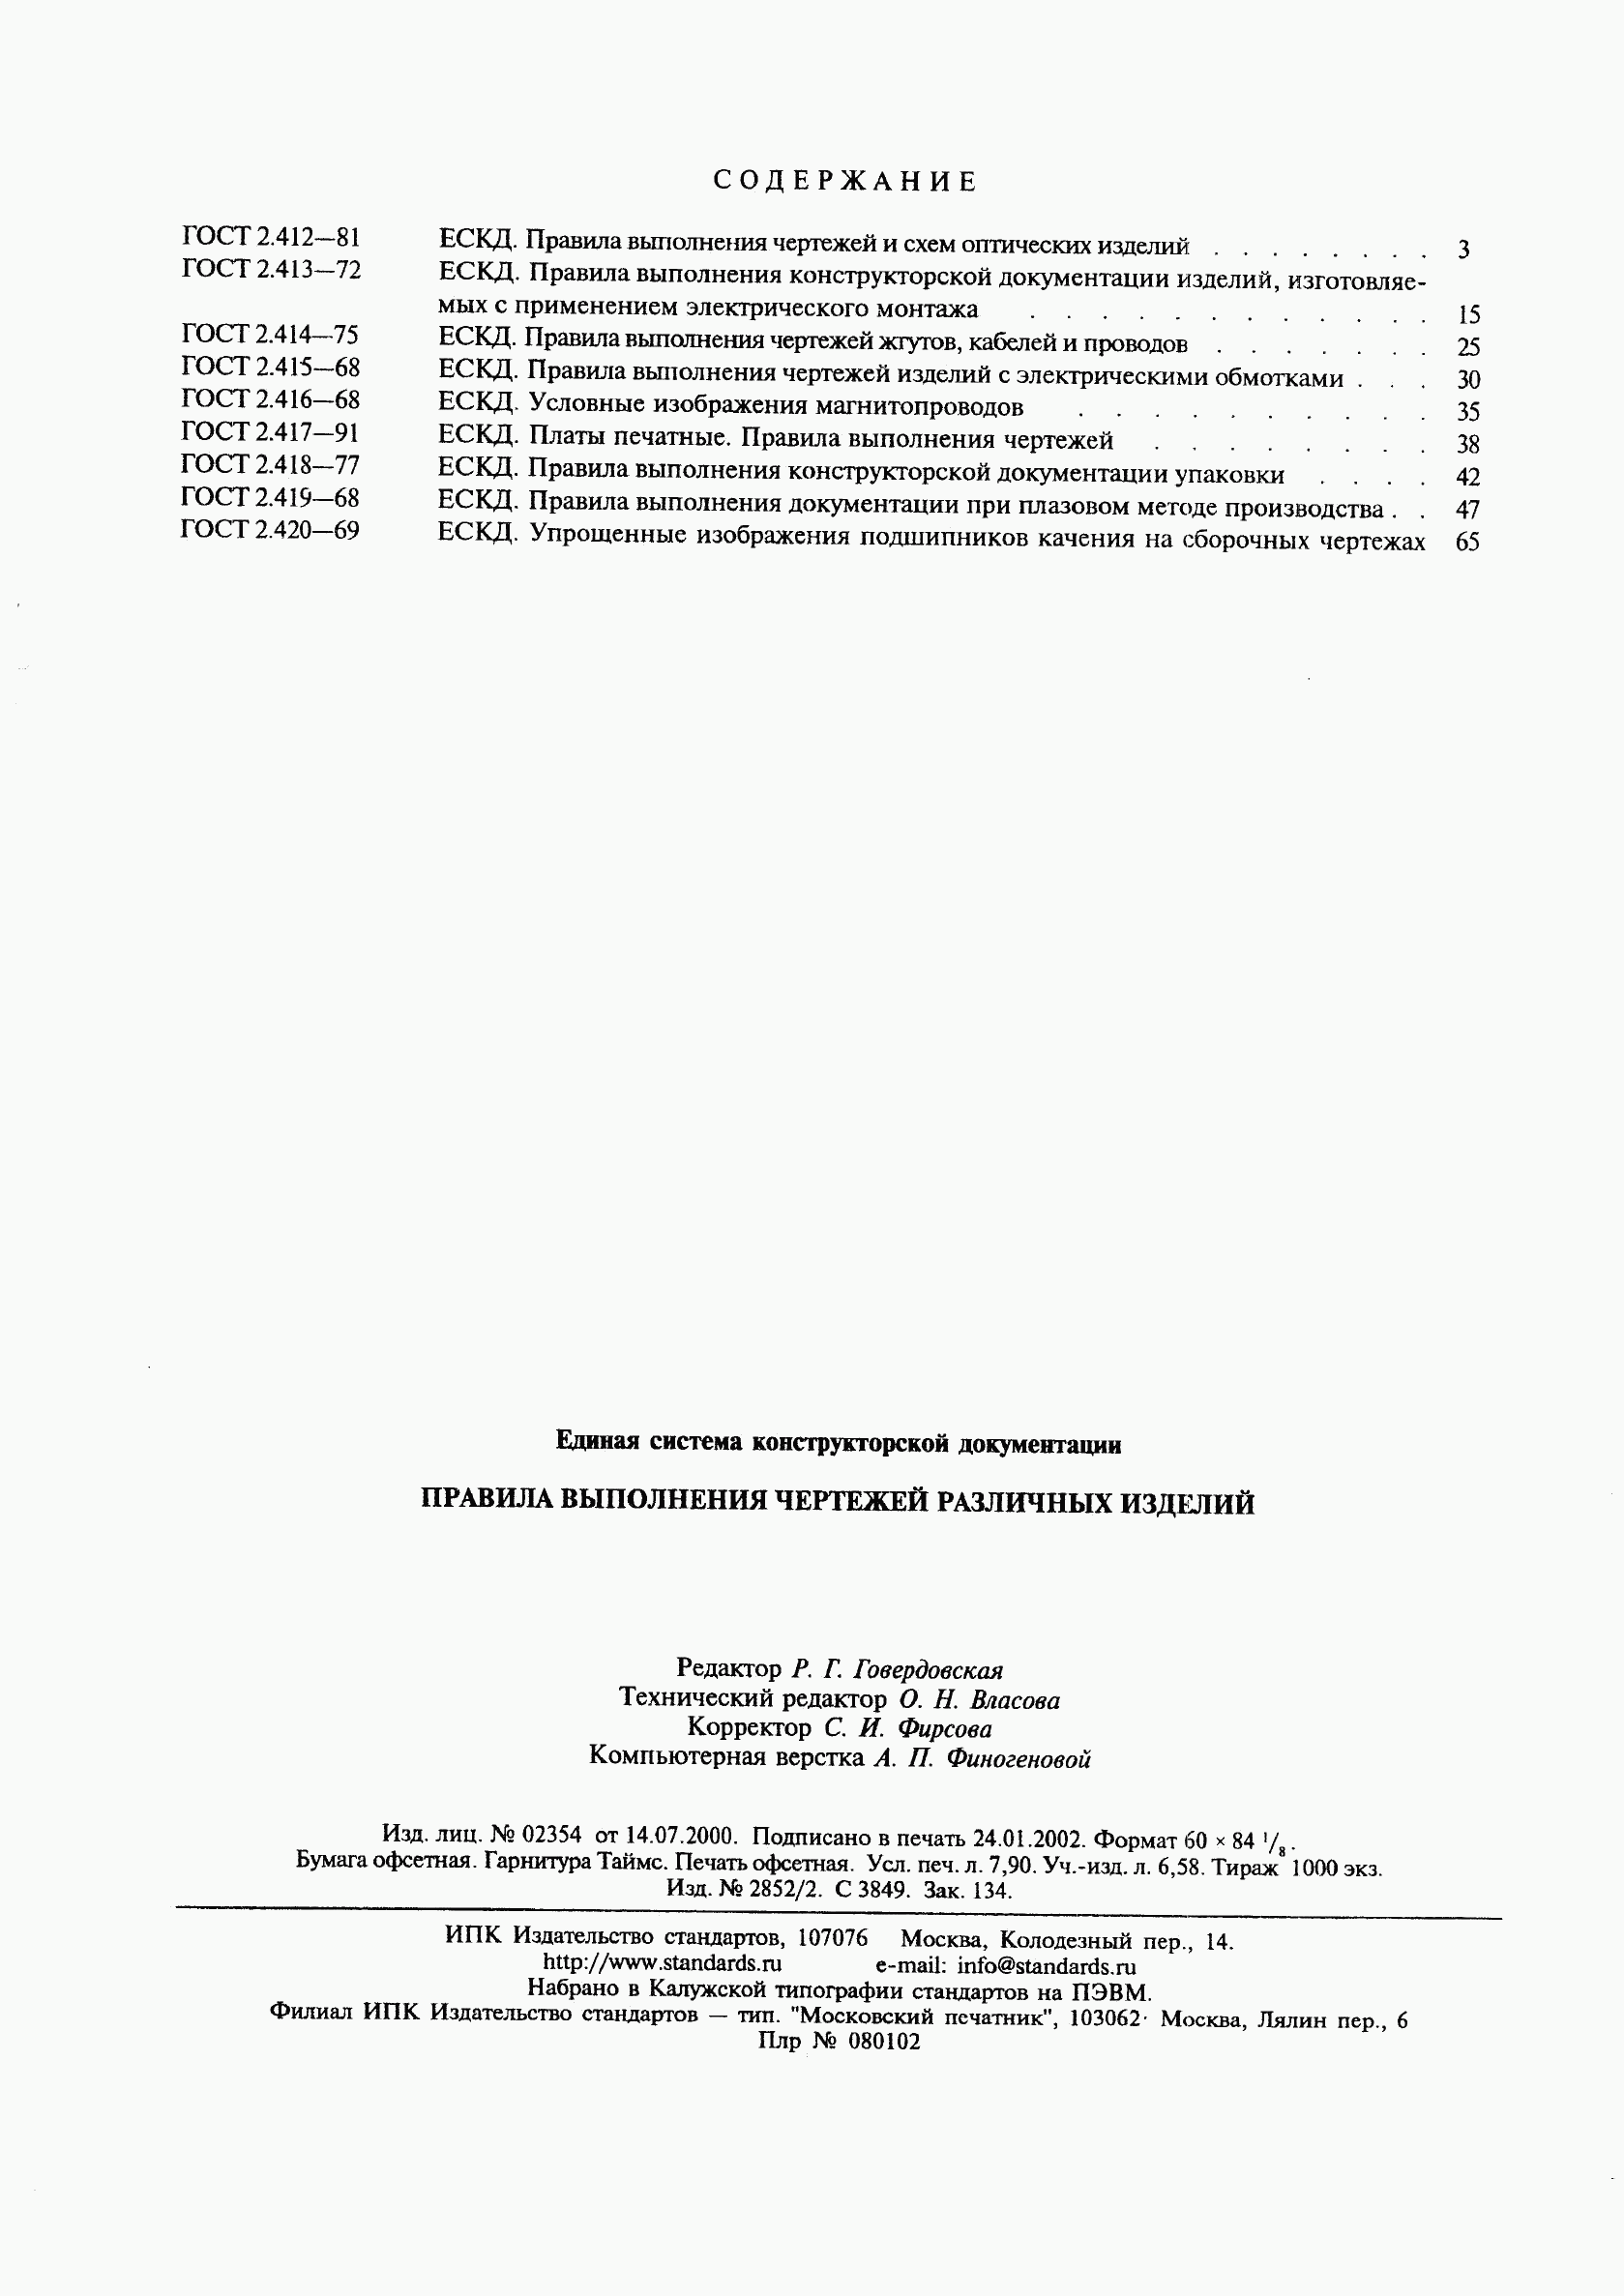 ГОСТ 2.420-69, страница 5